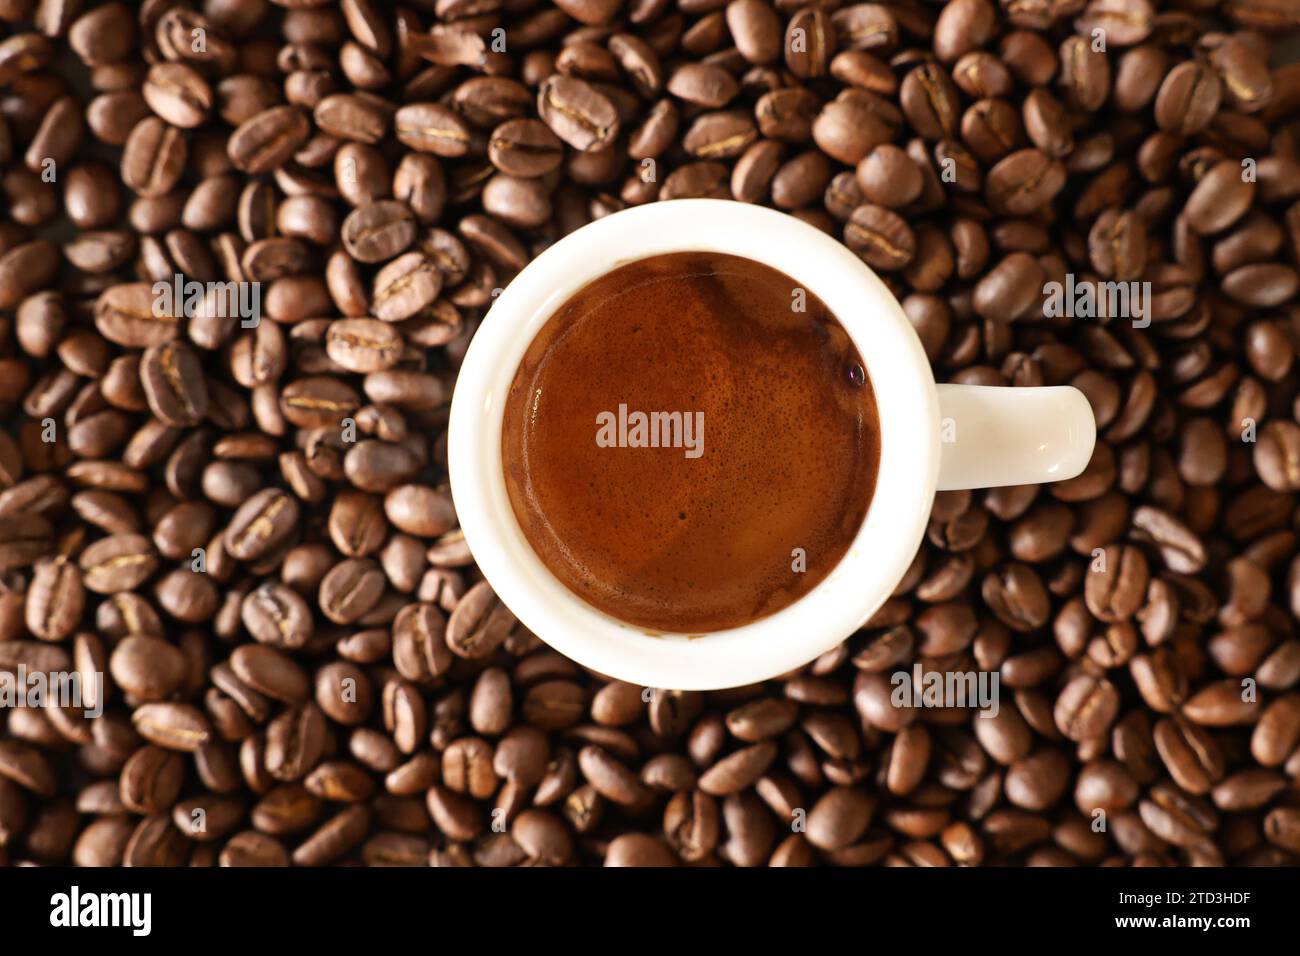 Una vista che guarda direttamente in basso su una tazza di caffè bianco riempita con una tazza di caffè appena fatto con crema marrone. Sfondo di chicchi di caffè tostati. Foto Stock